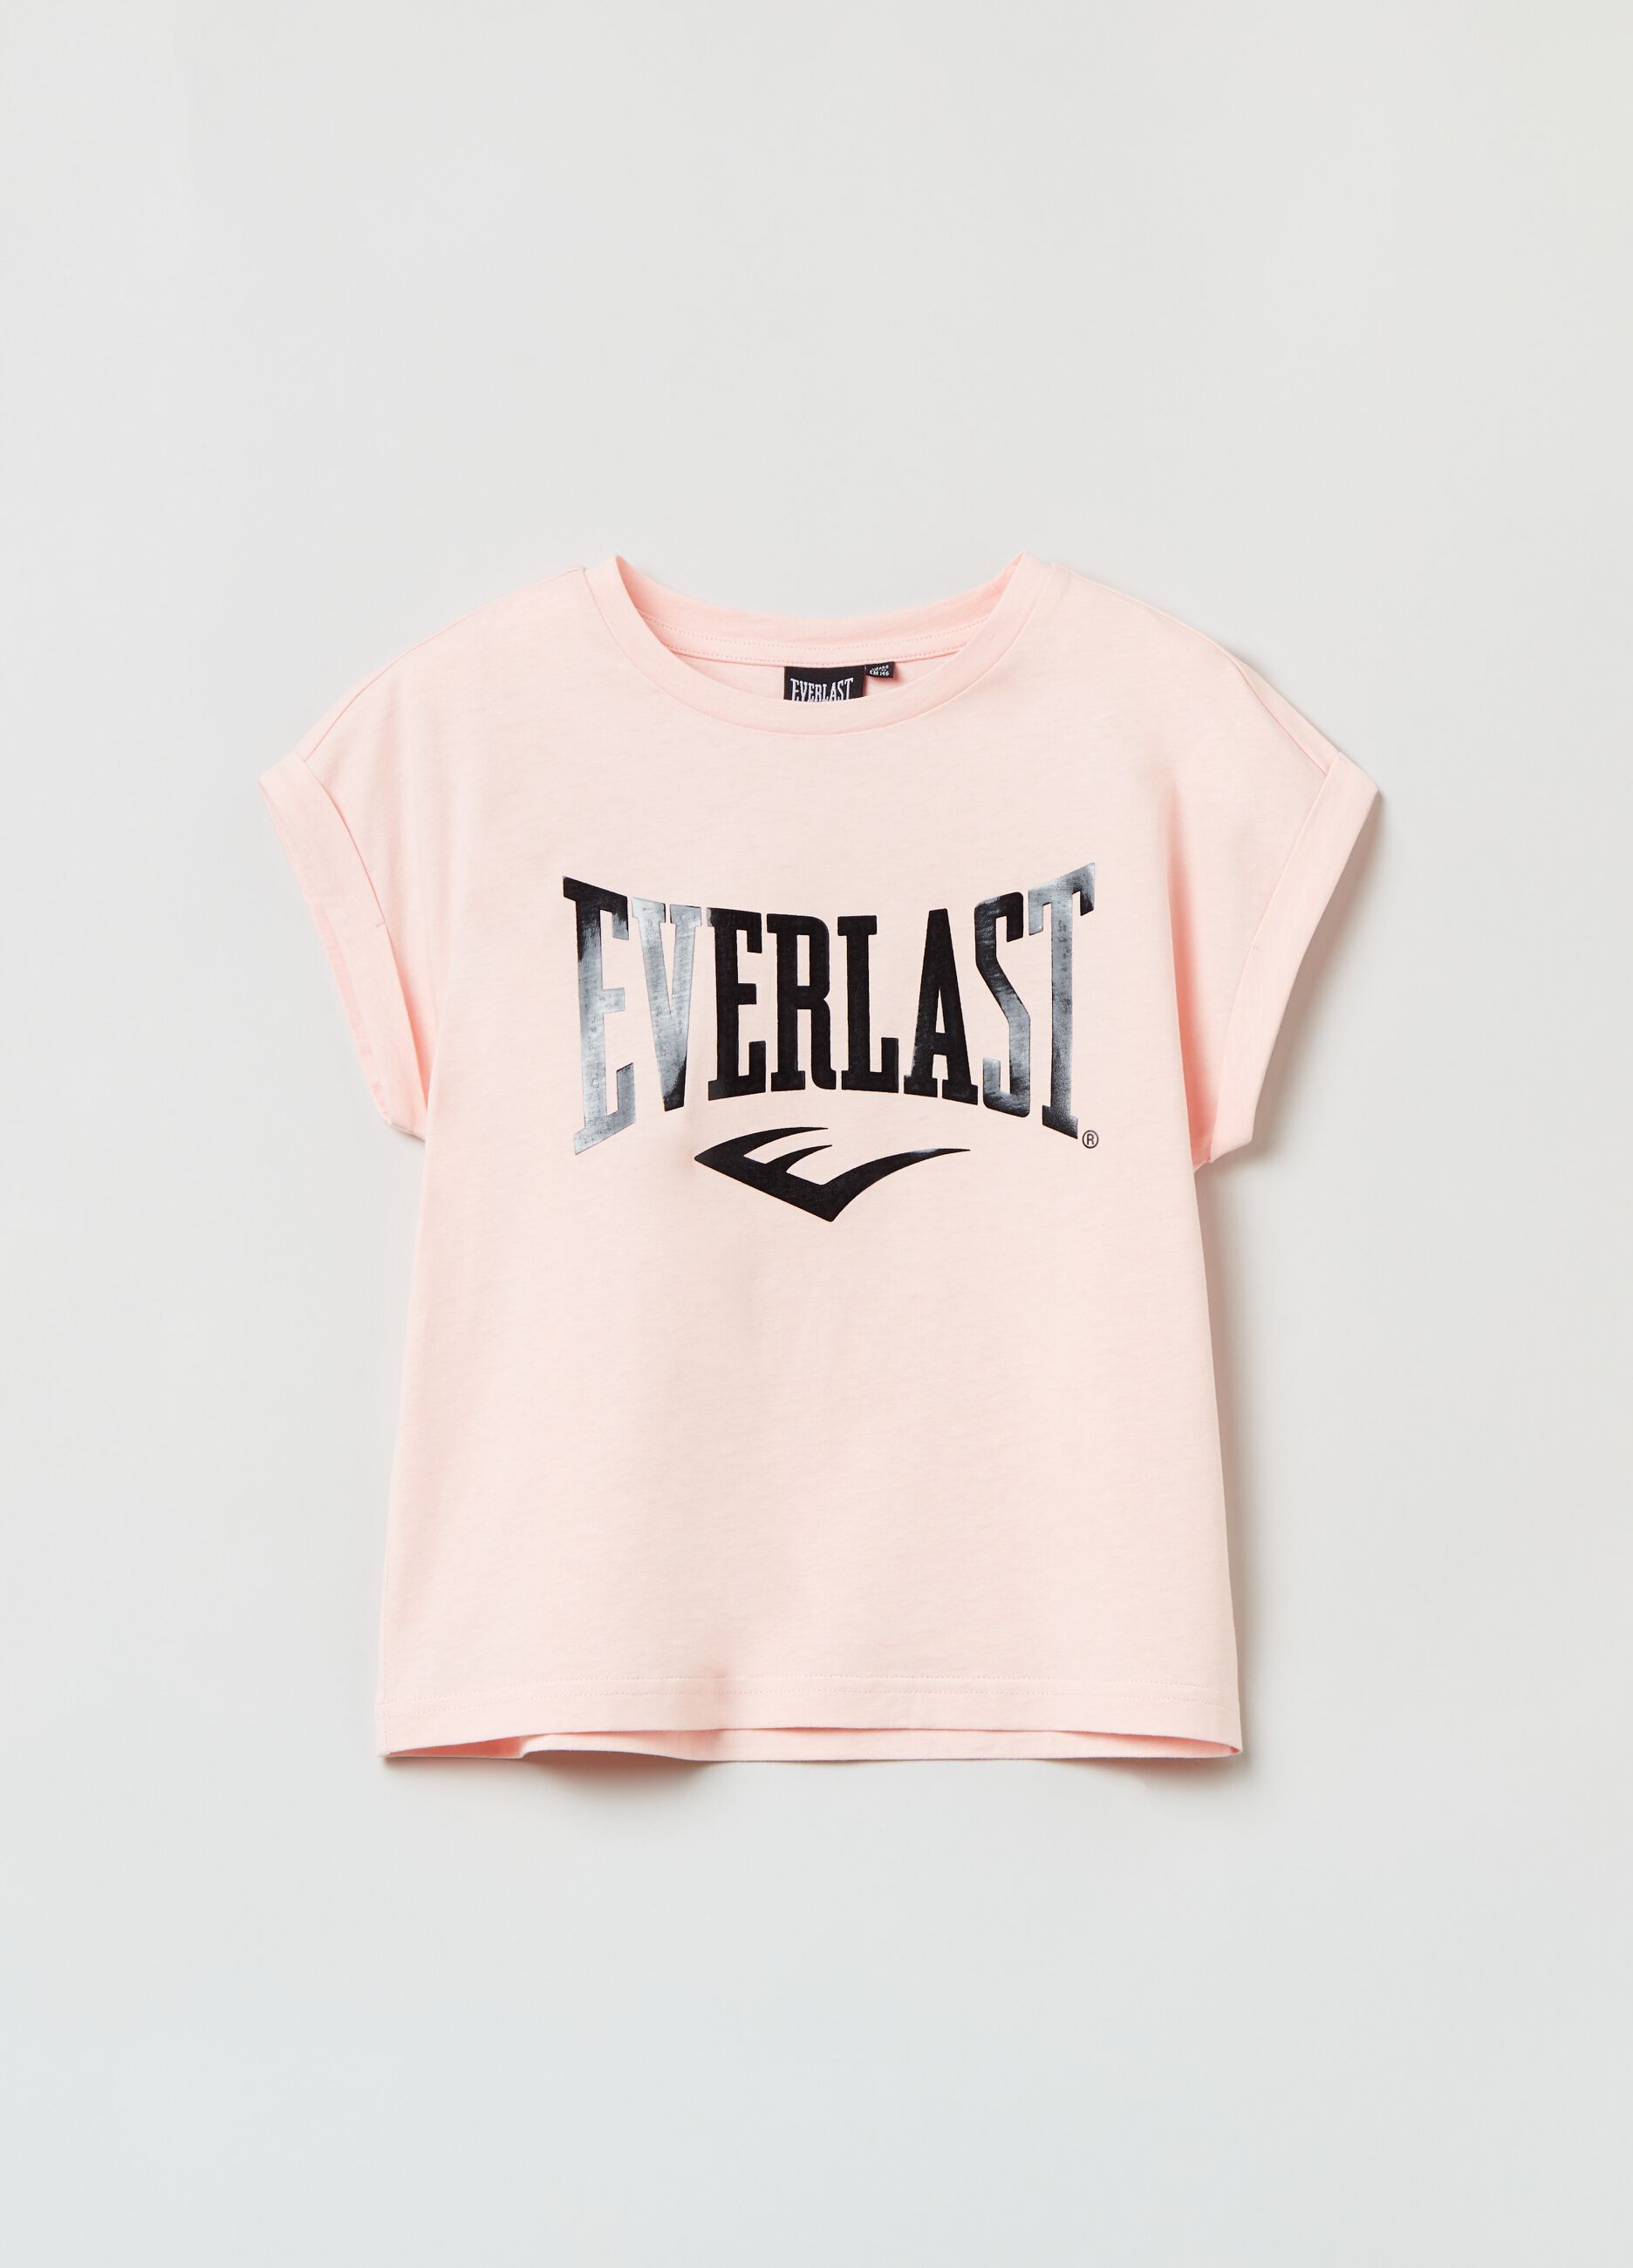 T-shirt smanicata in cotone Everlast